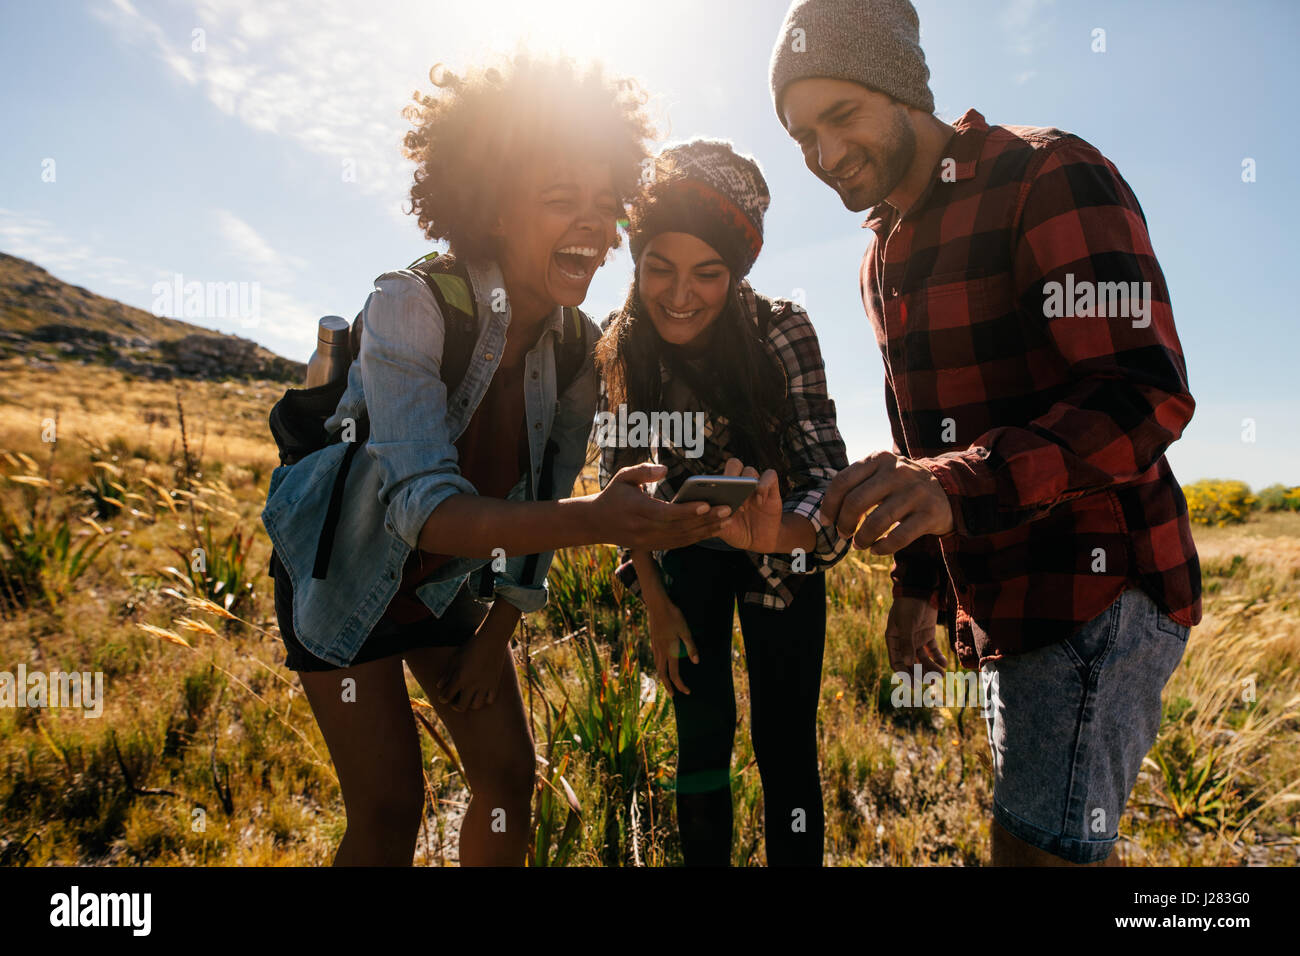 Gruppe von Wanderern betrachten von Bildern auf dem Handy und lachen. Glückliche junge Menschen wandern im Land. Stockfoto